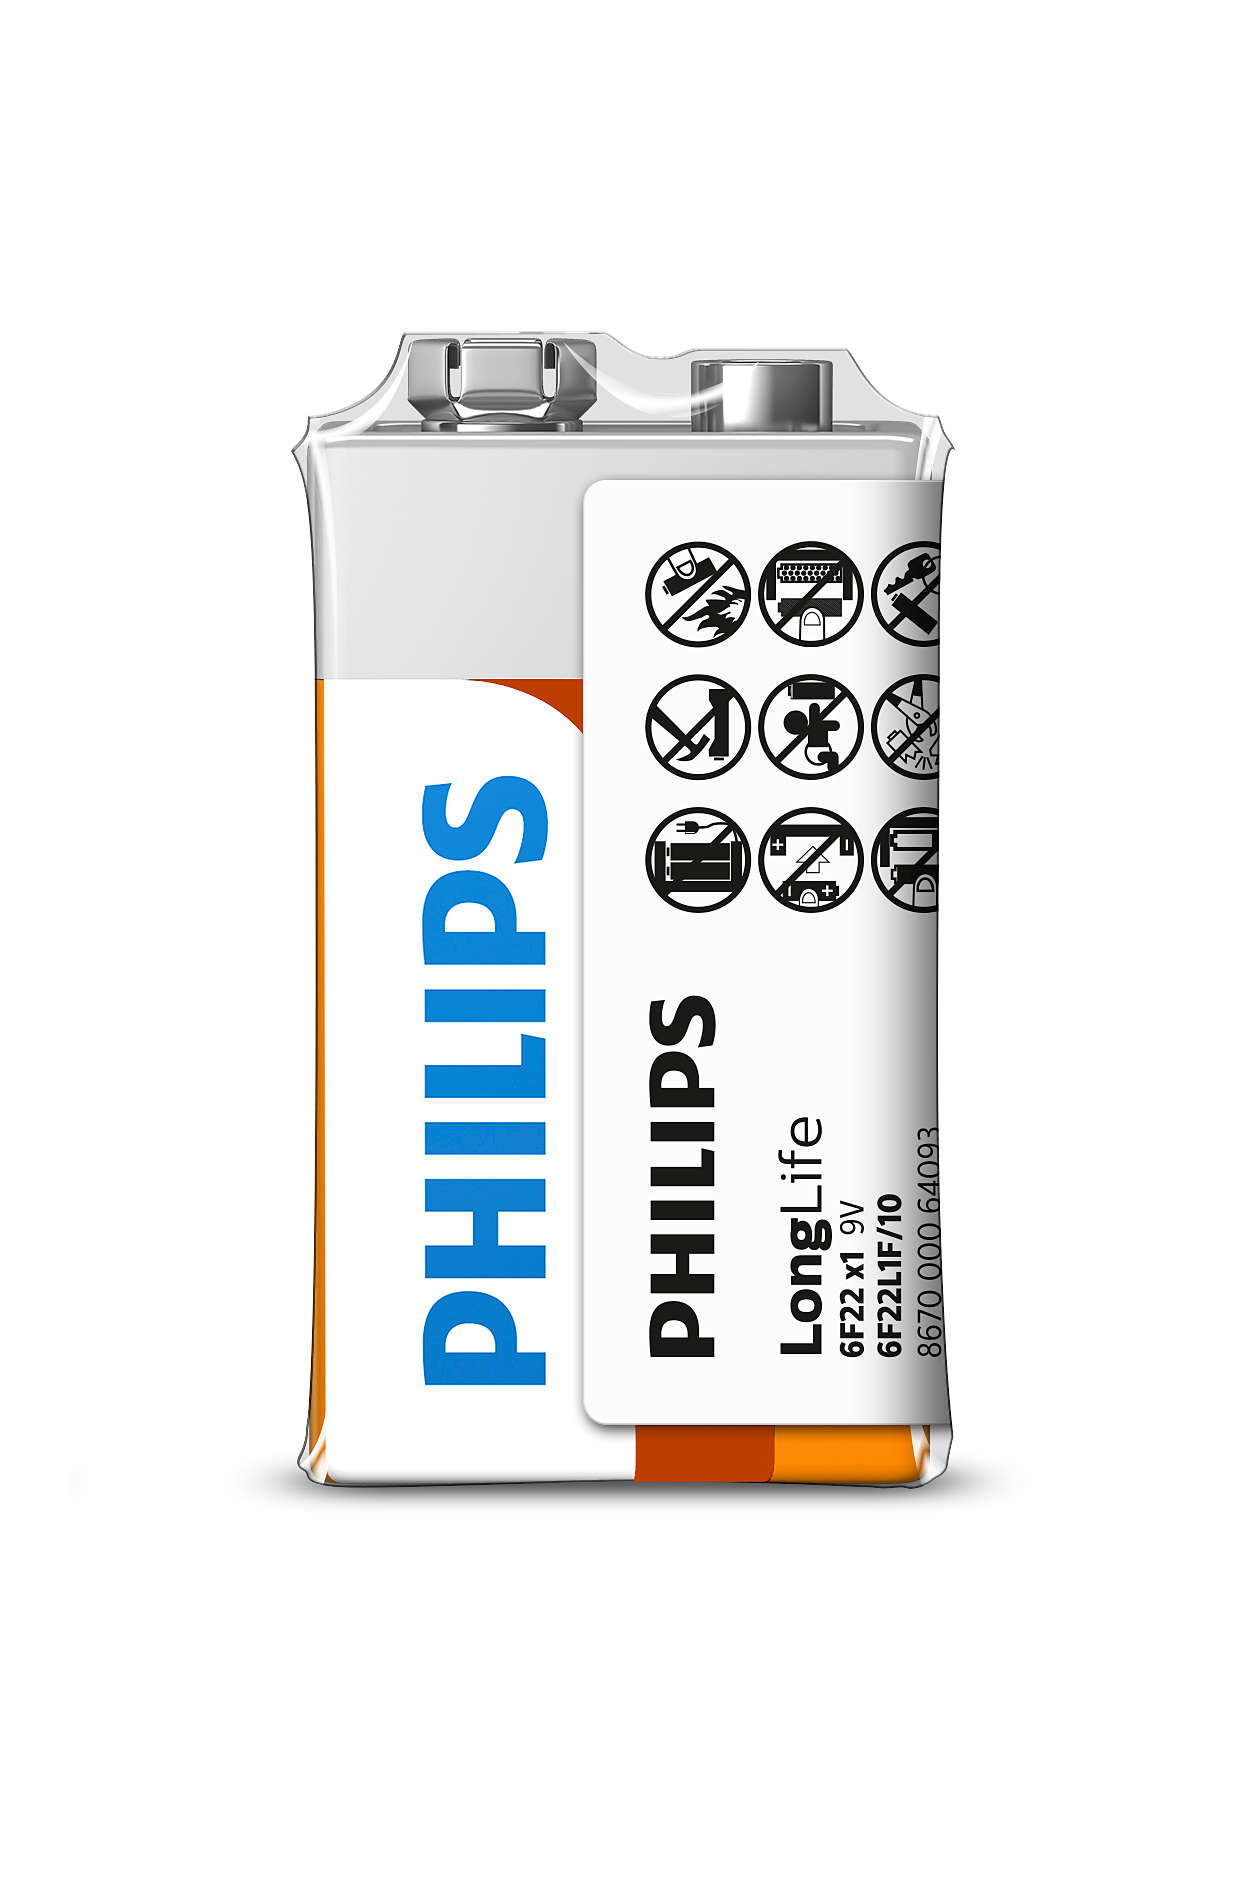 Högkvalitativa batterier för effektsnåla enheter